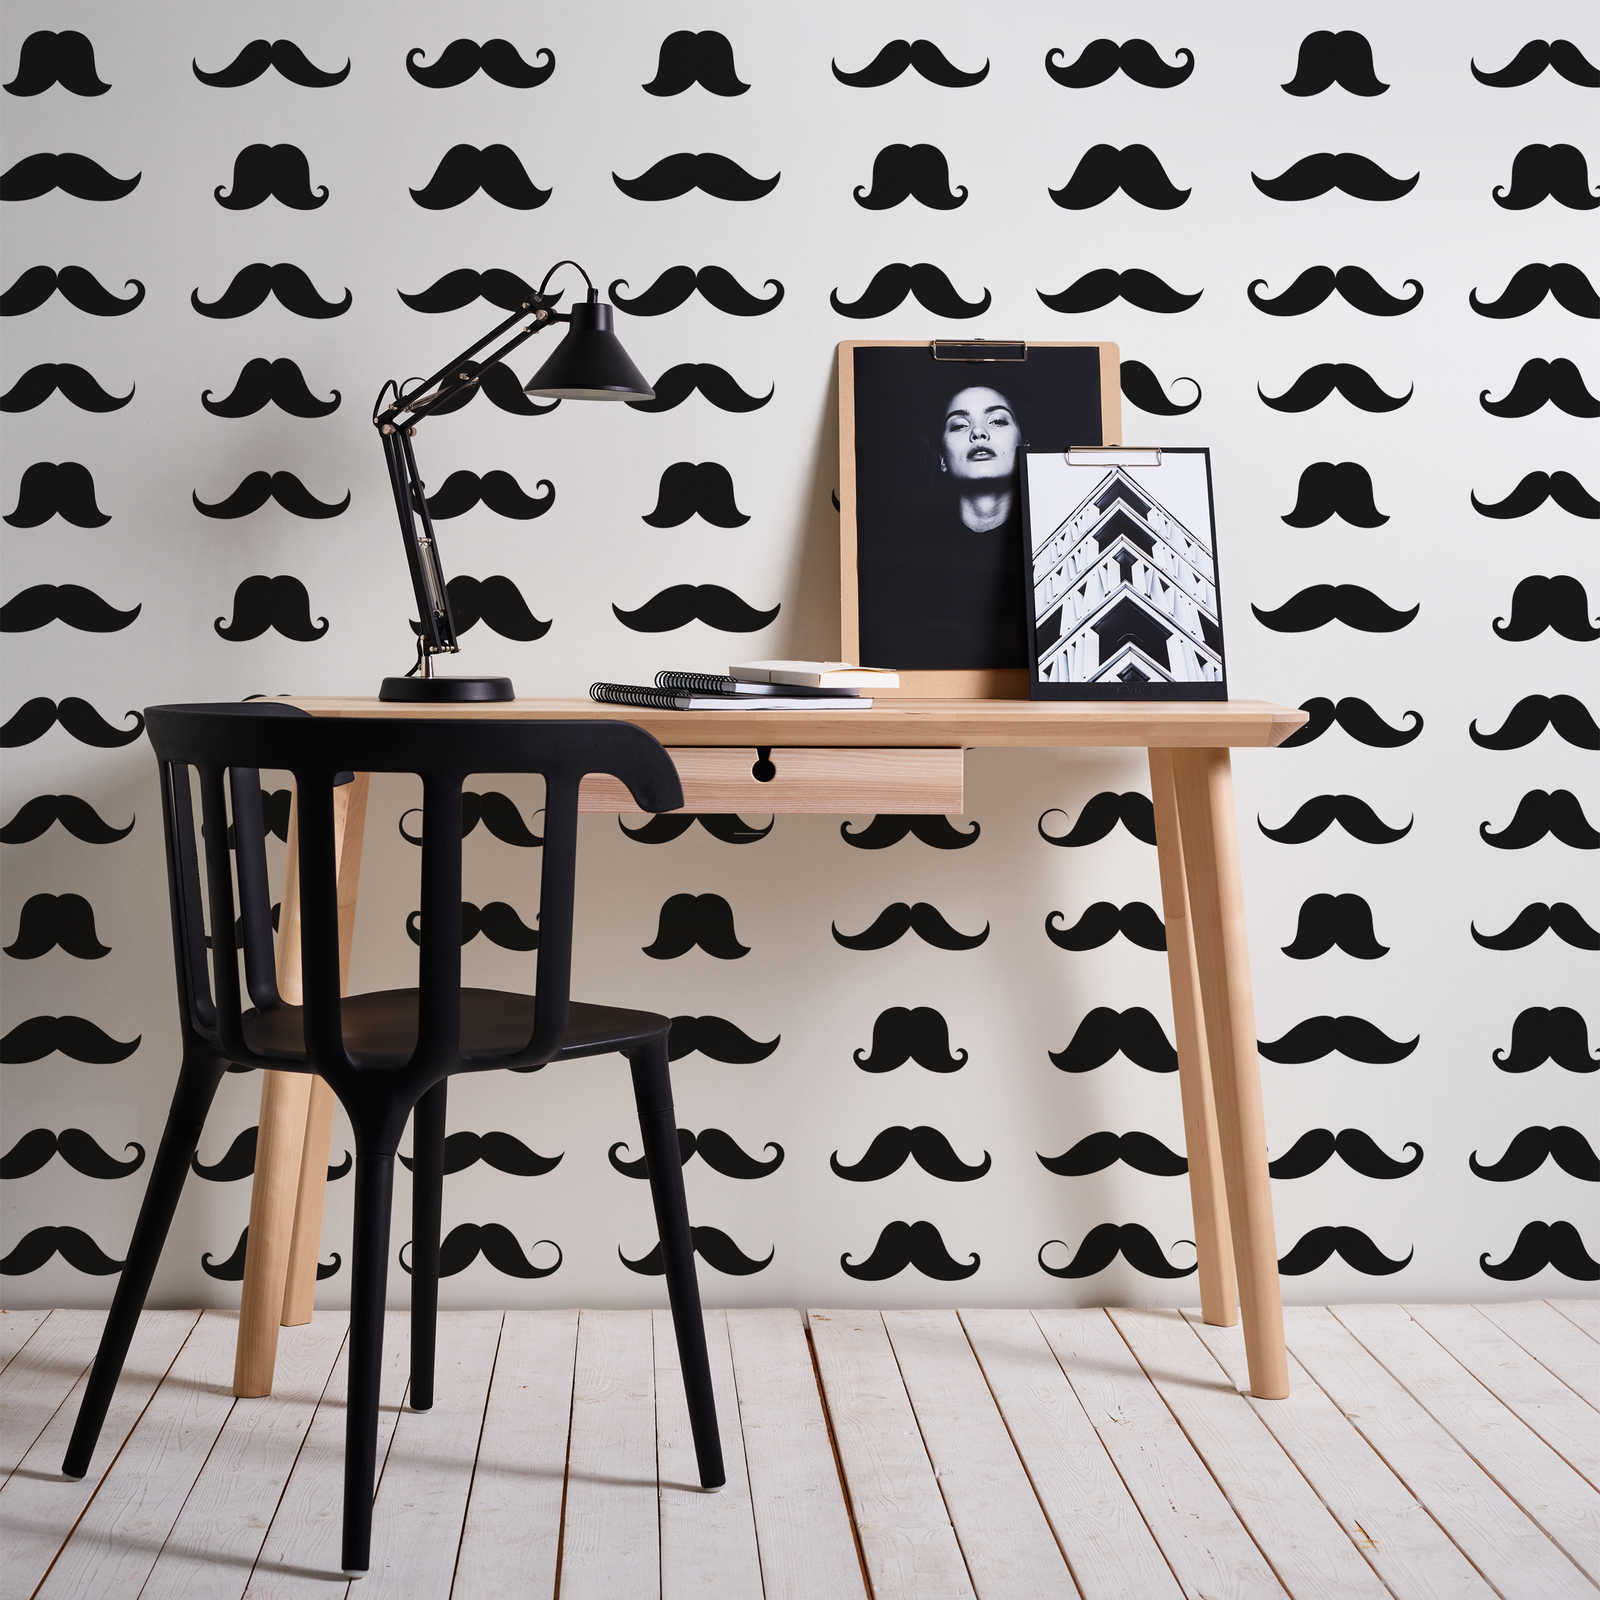         Fototapete Mustache cooles Schnäuzer Motiv – Schwarz-Weiß – Premium Glattvlies
    